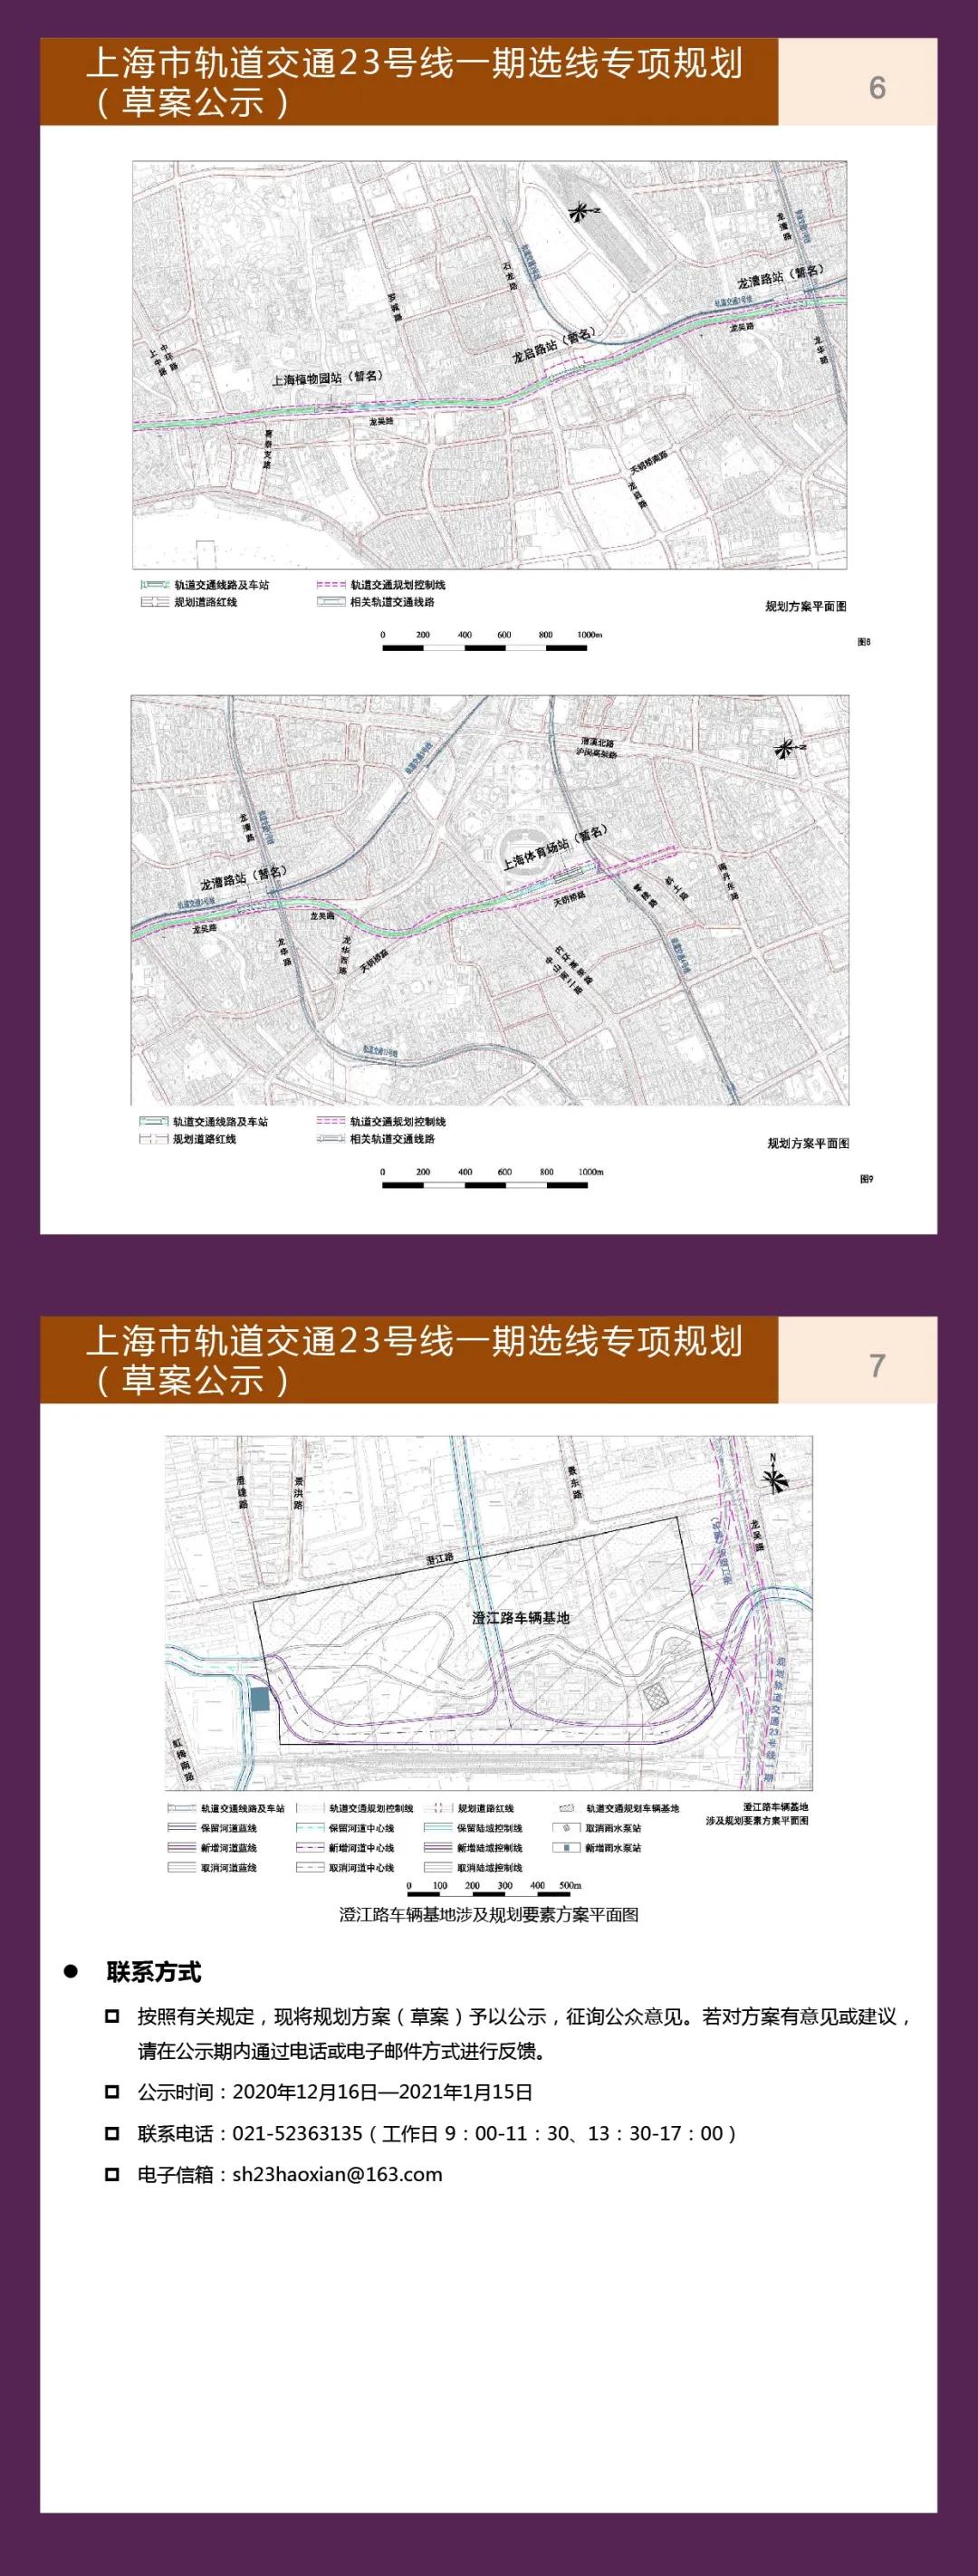 上海市轨道交通23号线一期选线专项规划